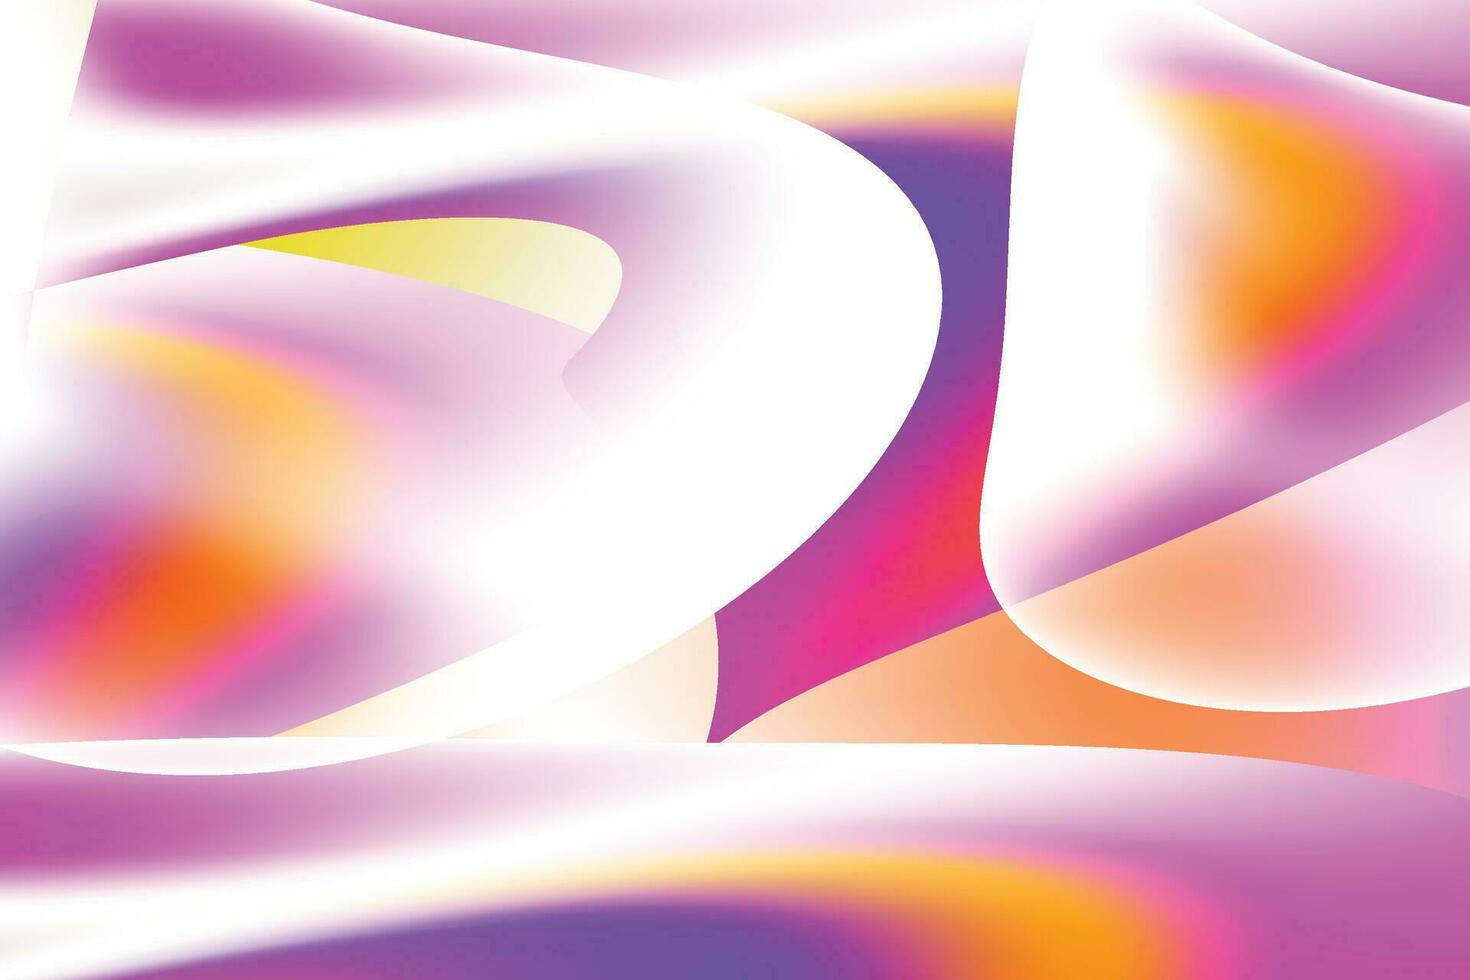 fondo futurista degradado azul oscuro y rosa púrpura abstracto con líneas de rayas diagonales y punto brillante. diseño de banner moderno y sencillo. puede usarse para presentaciones de negocios, afiches, plantillas. vector